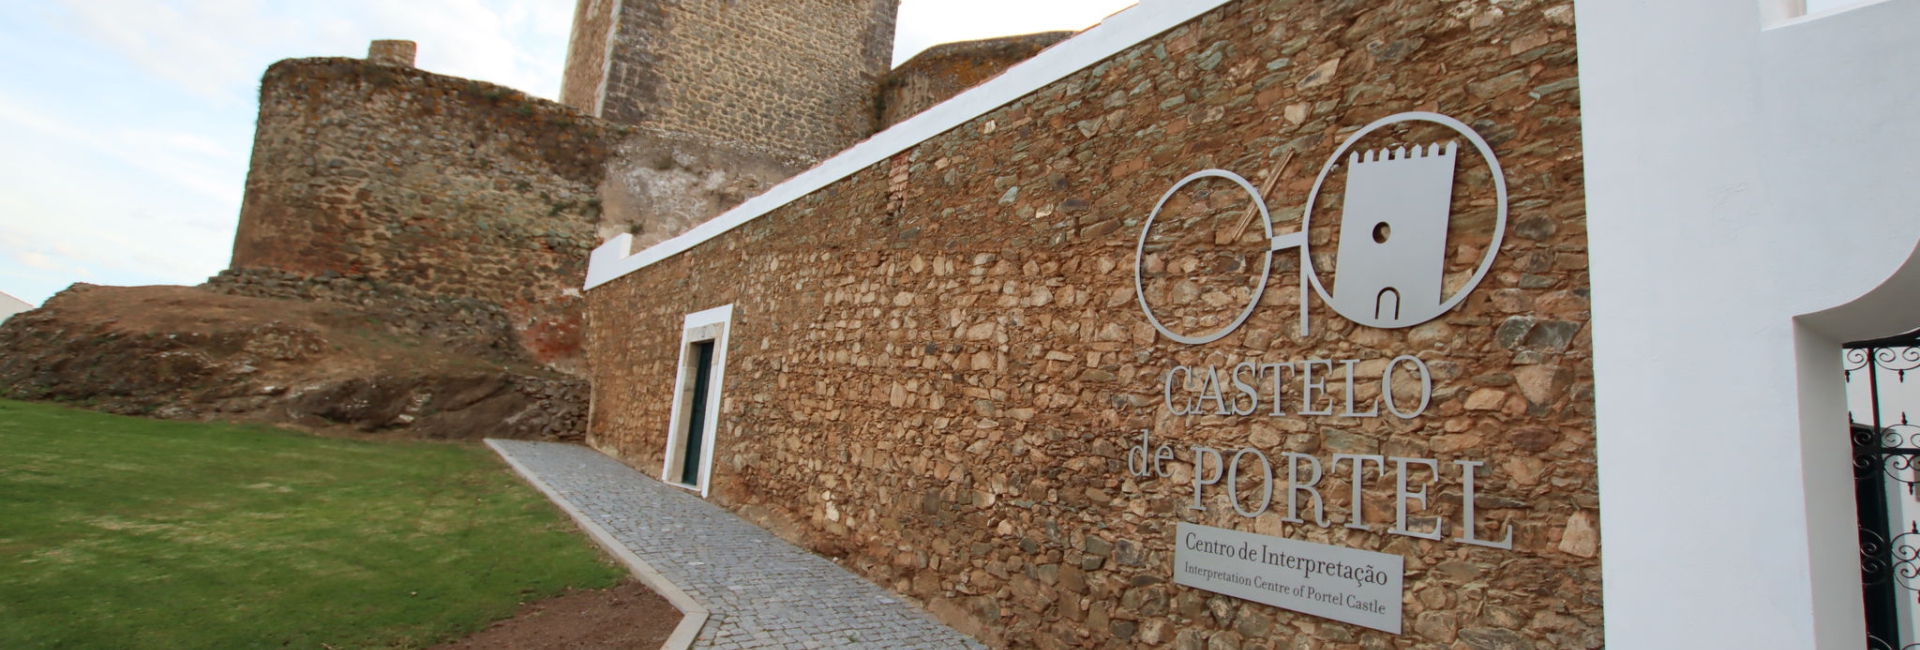 Centro de Interpretação do Castelo de Portel